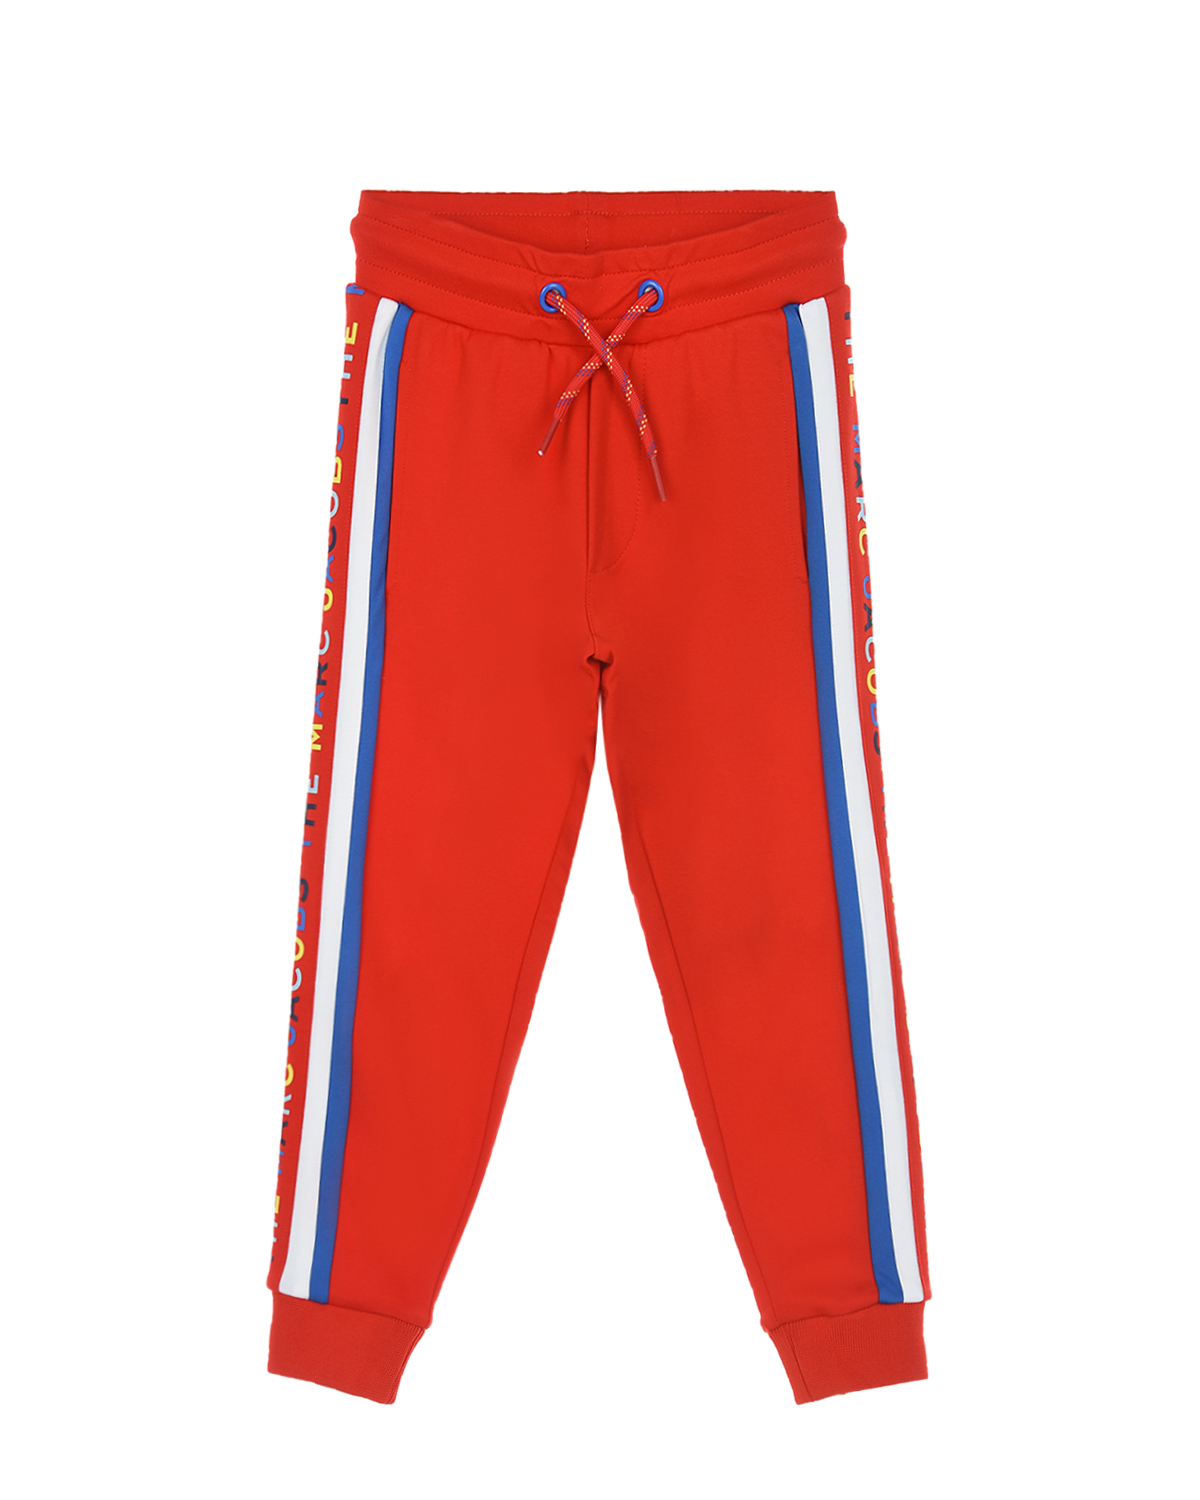 Красные спортивные брюки с разноцветными лампасами The Marc Jacobs детские, размер 92 - фото 1